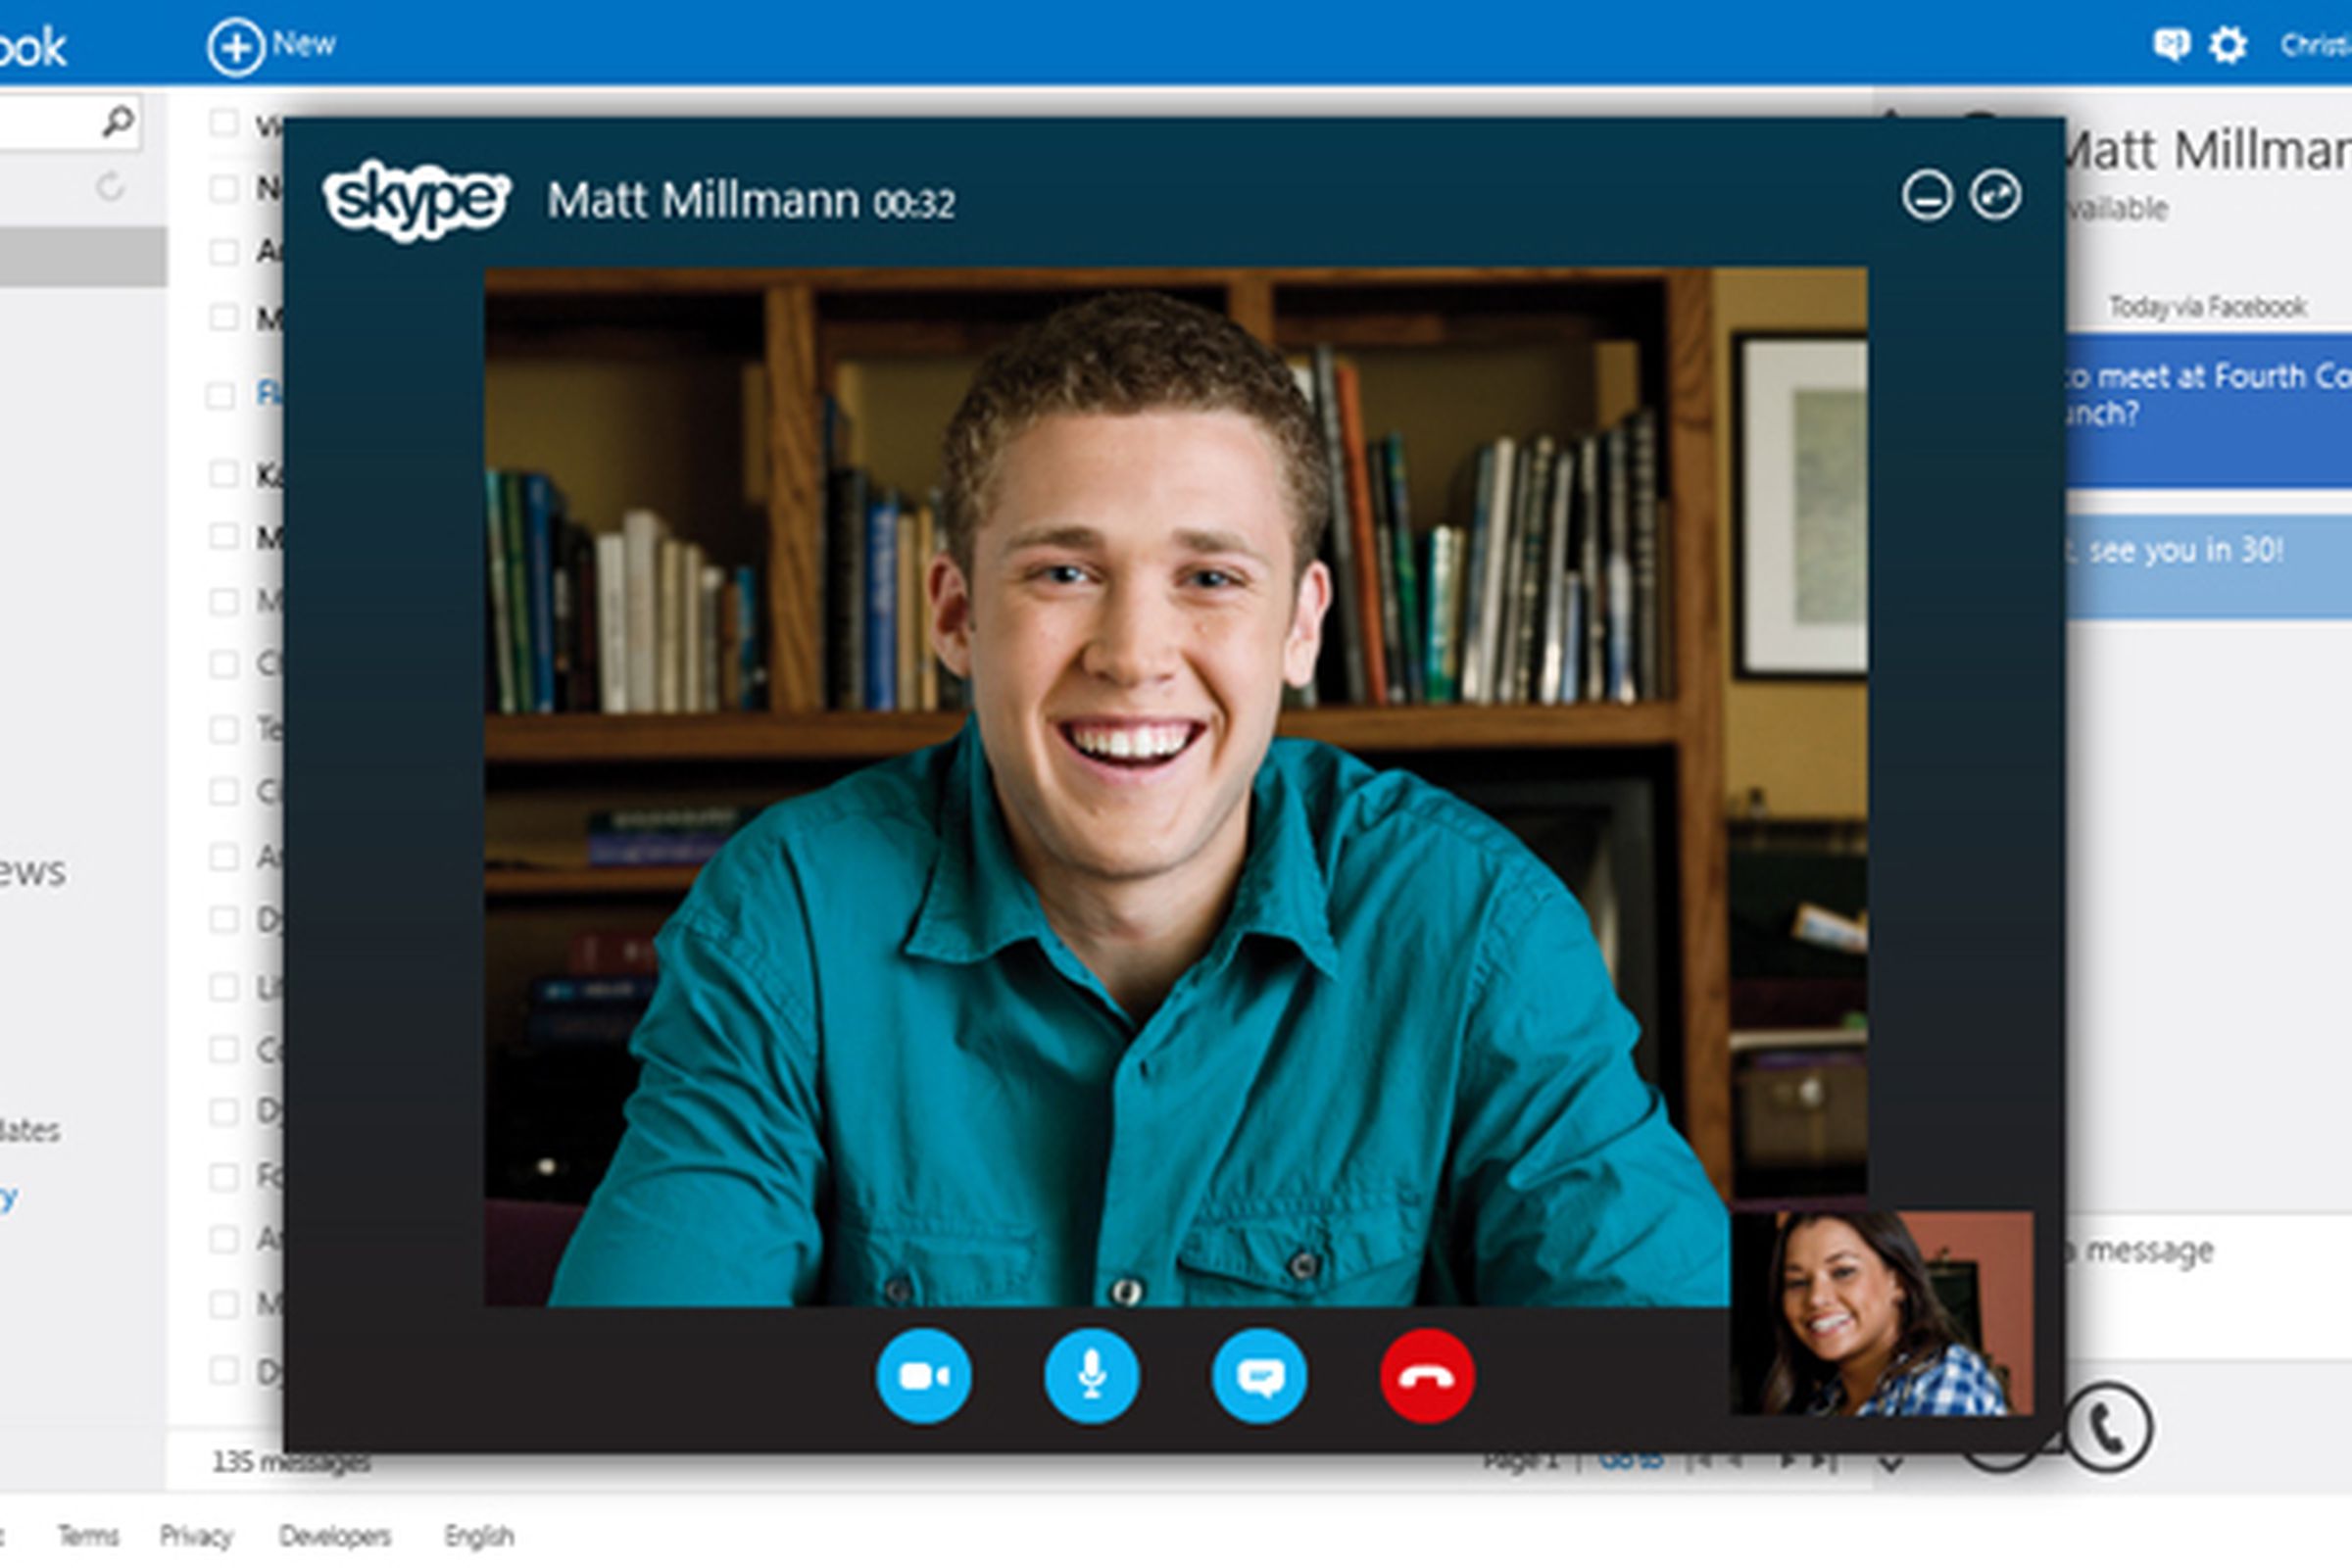 Skype Outlook.com